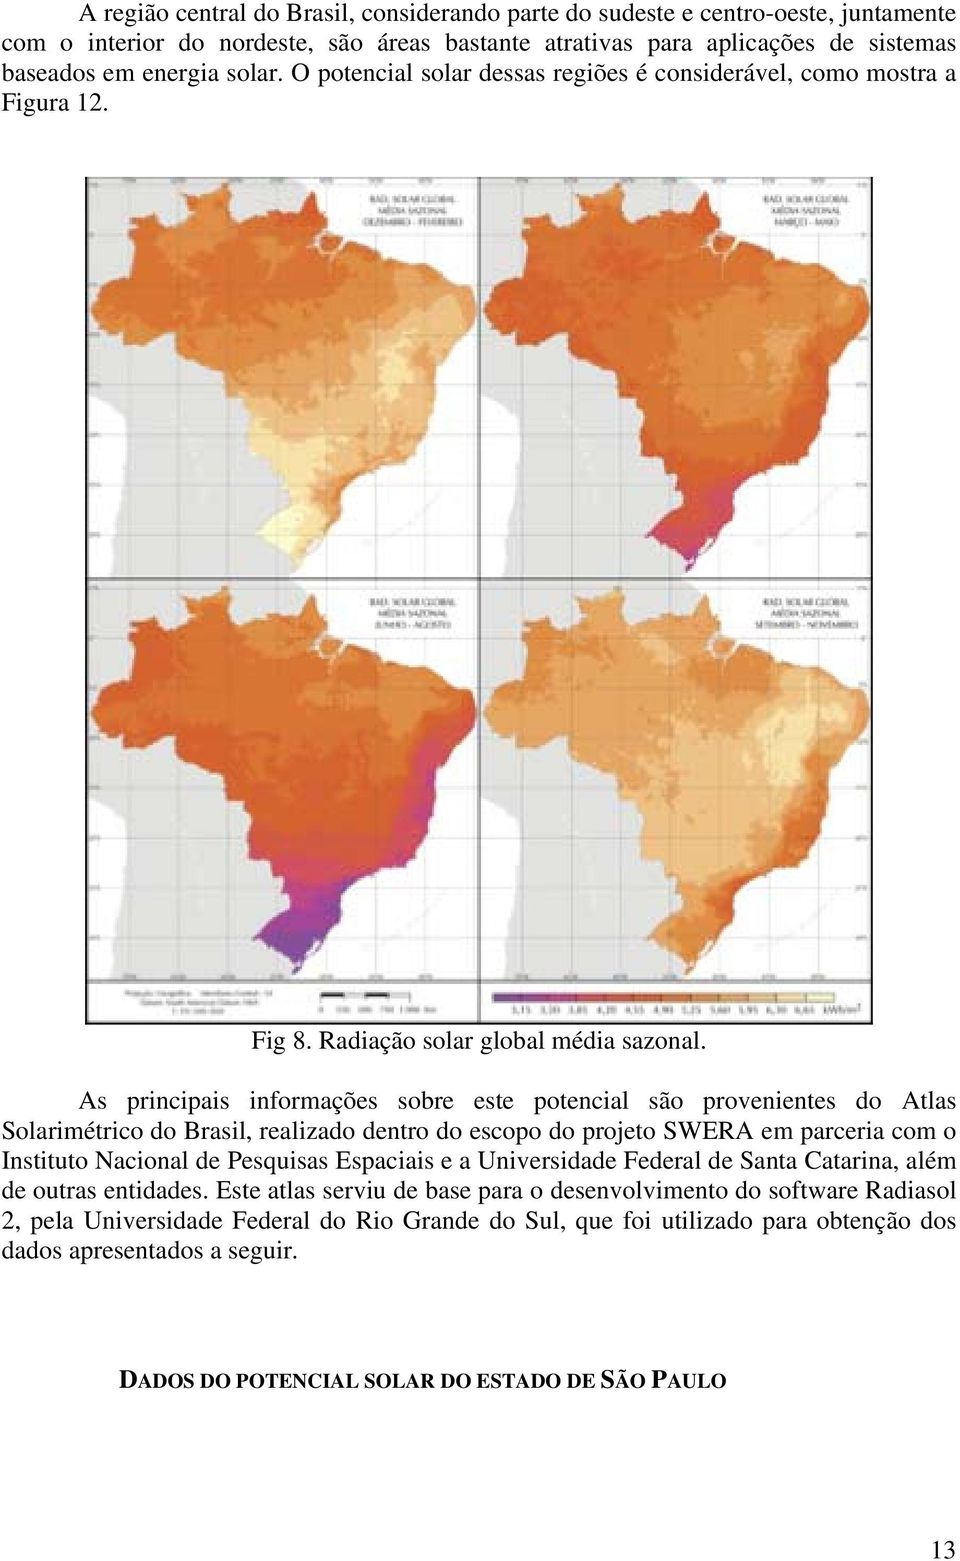 As principais informações sobre este potencial são provenientes do Atlas Solarimétrico do Brasil, realizado dentro do escopo do projeto SWERA em parceria com o Instituto Nacional de Pesquisas